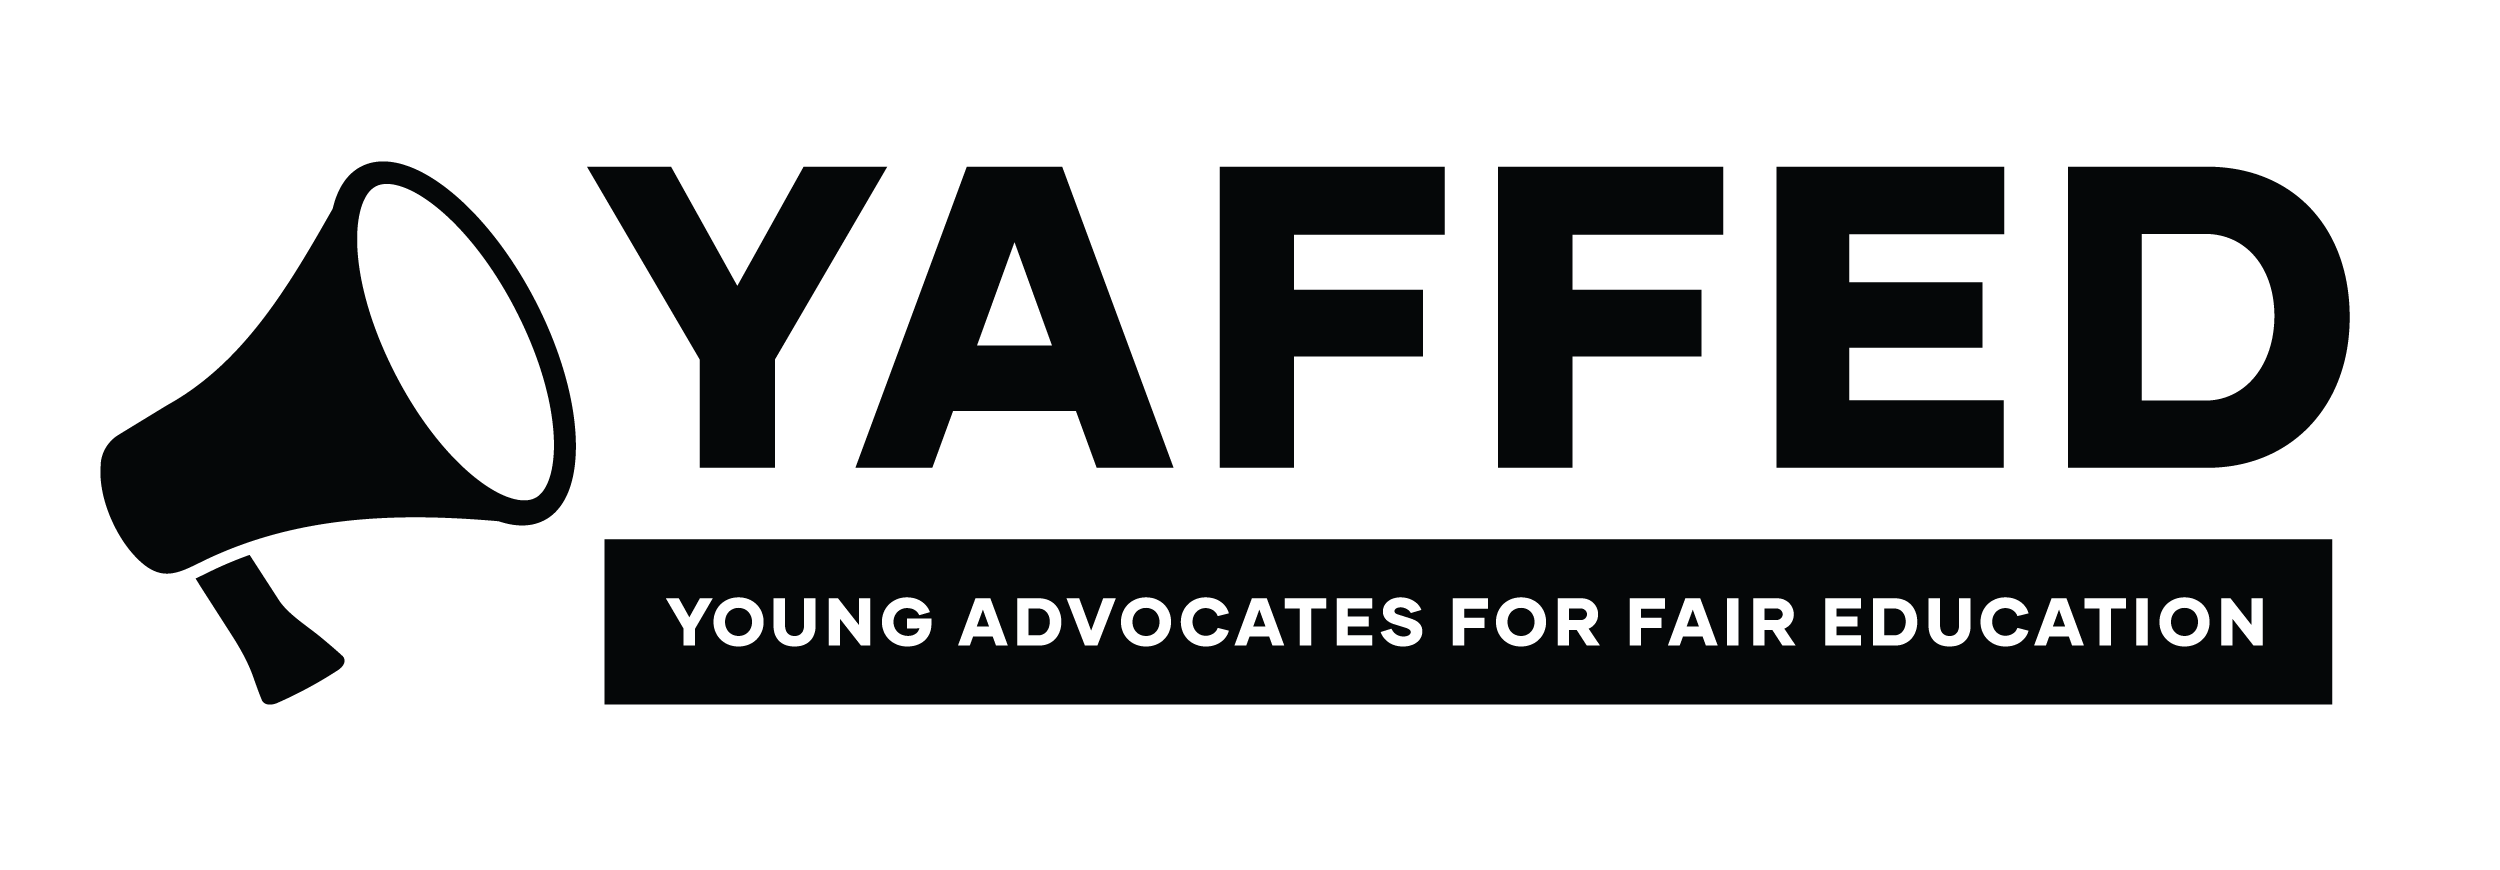 YAFFED logo